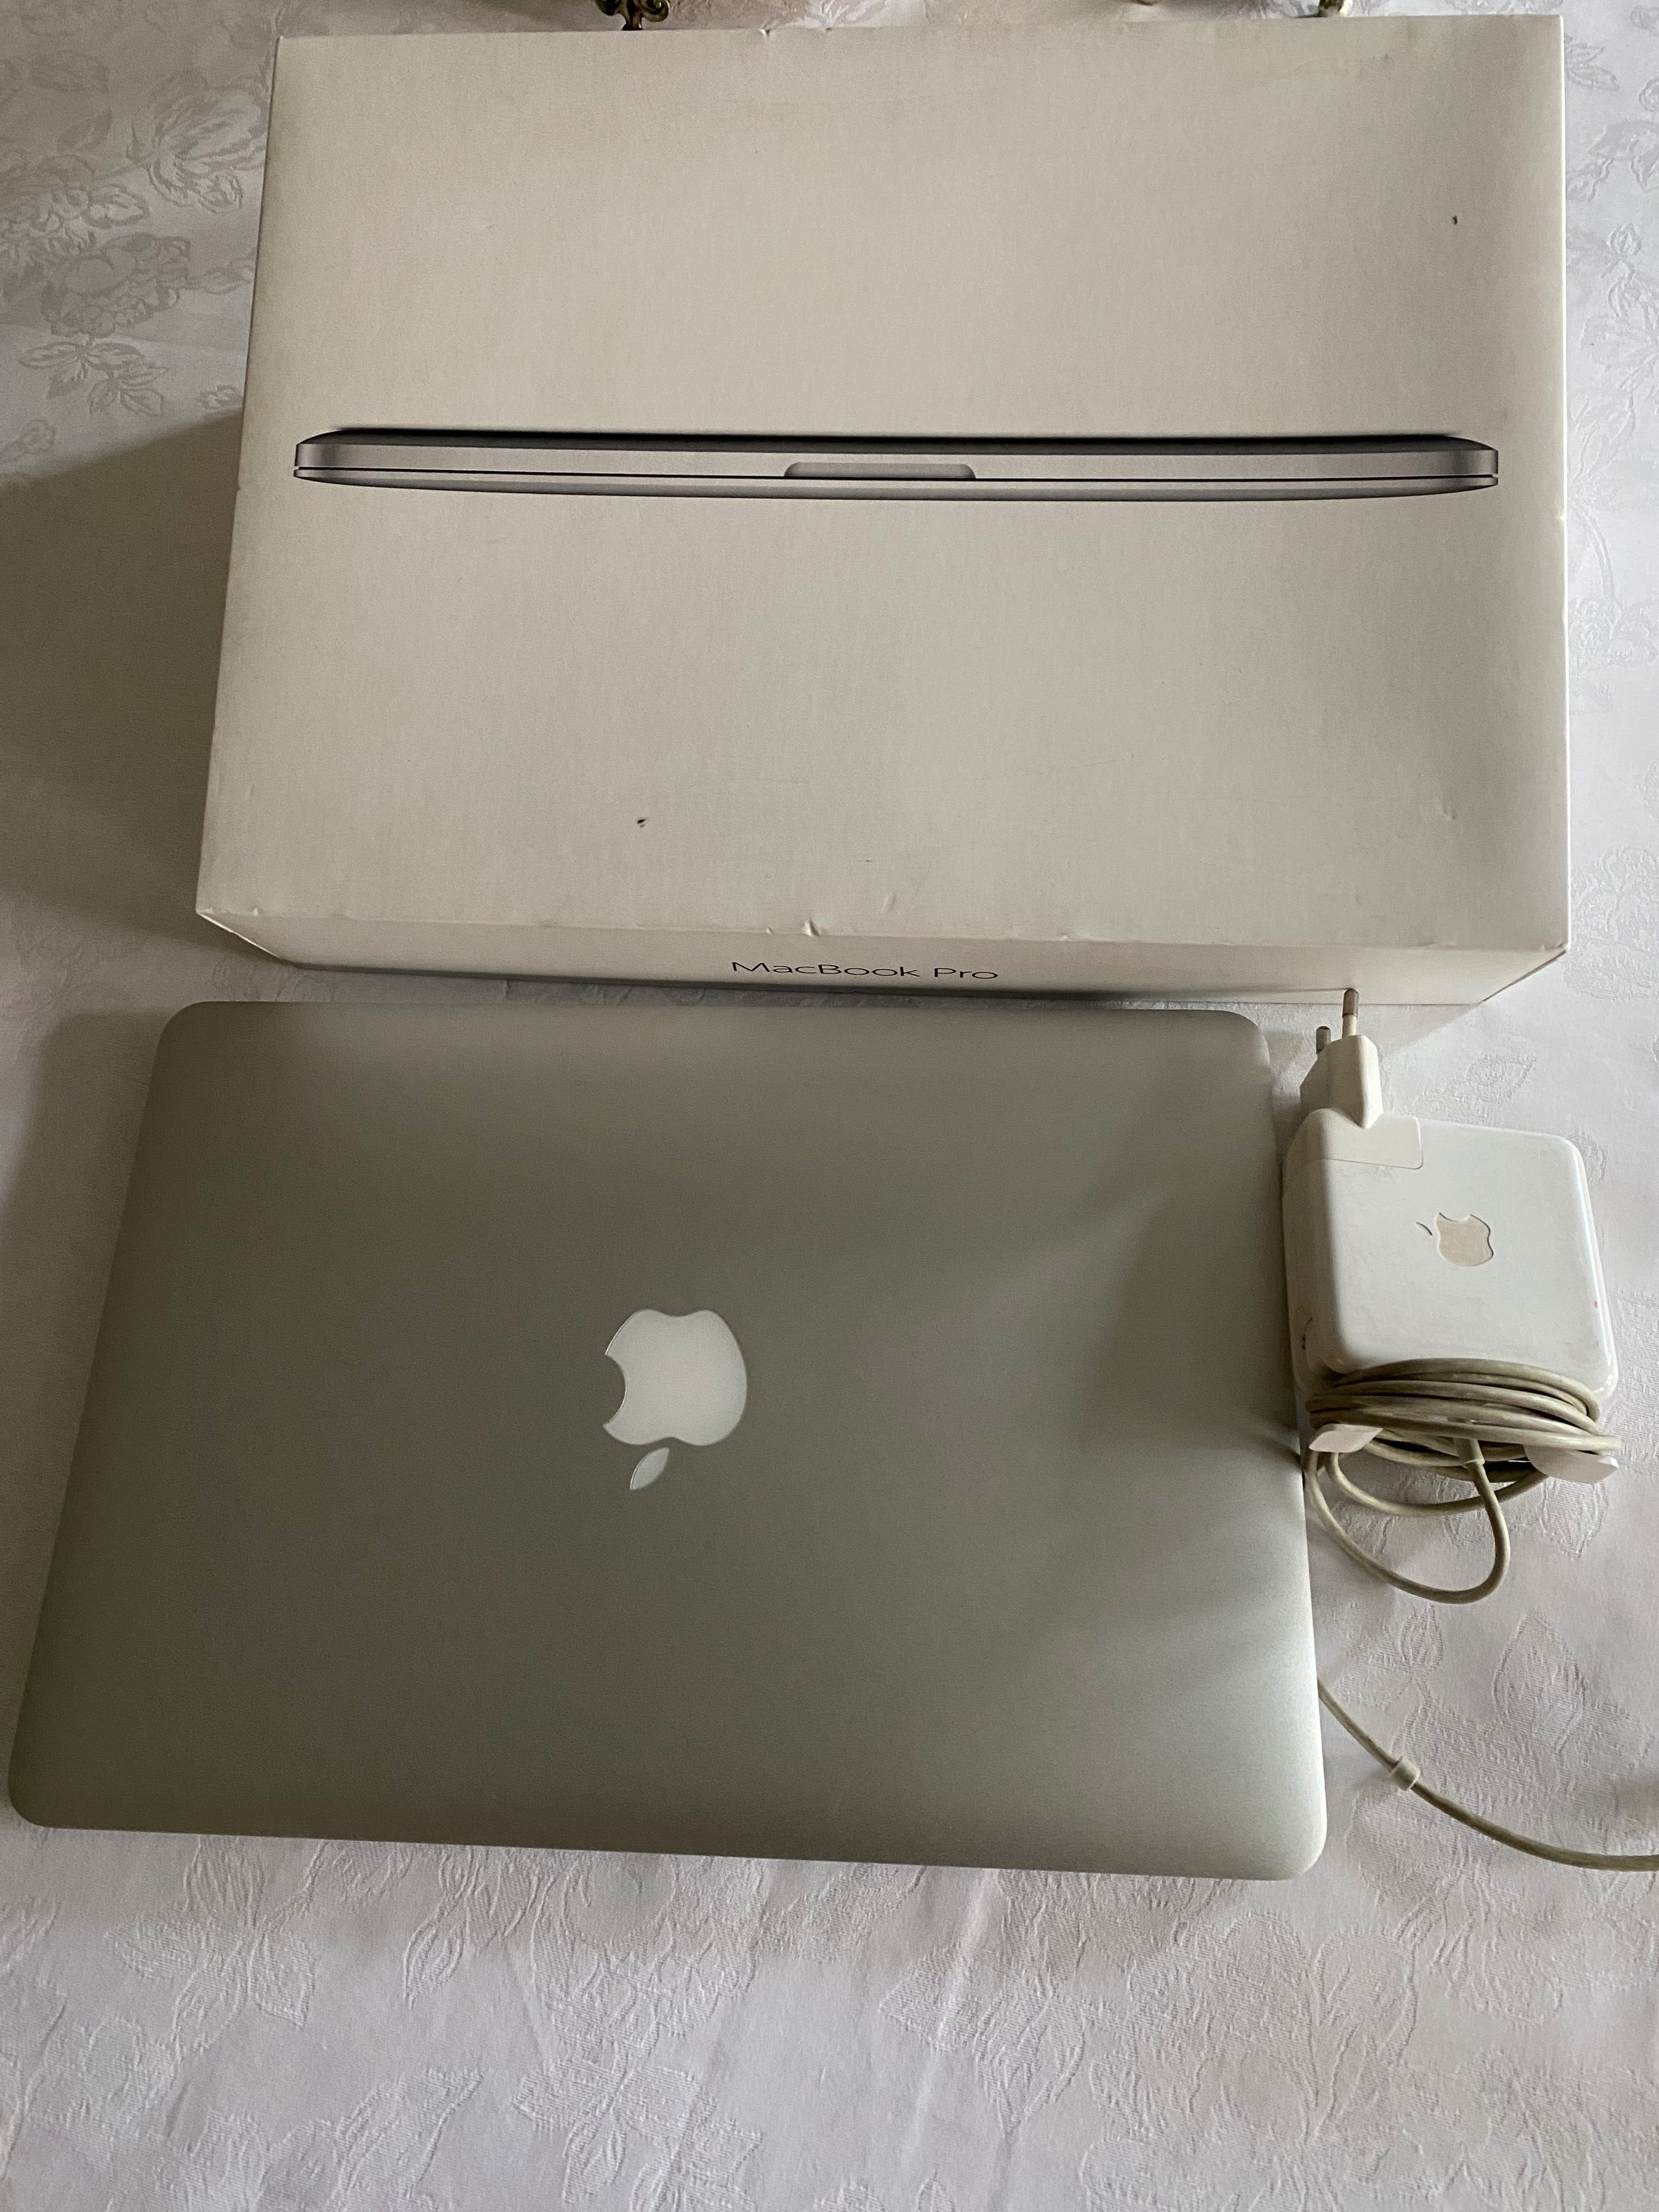 MacBook Pro 13', 2015